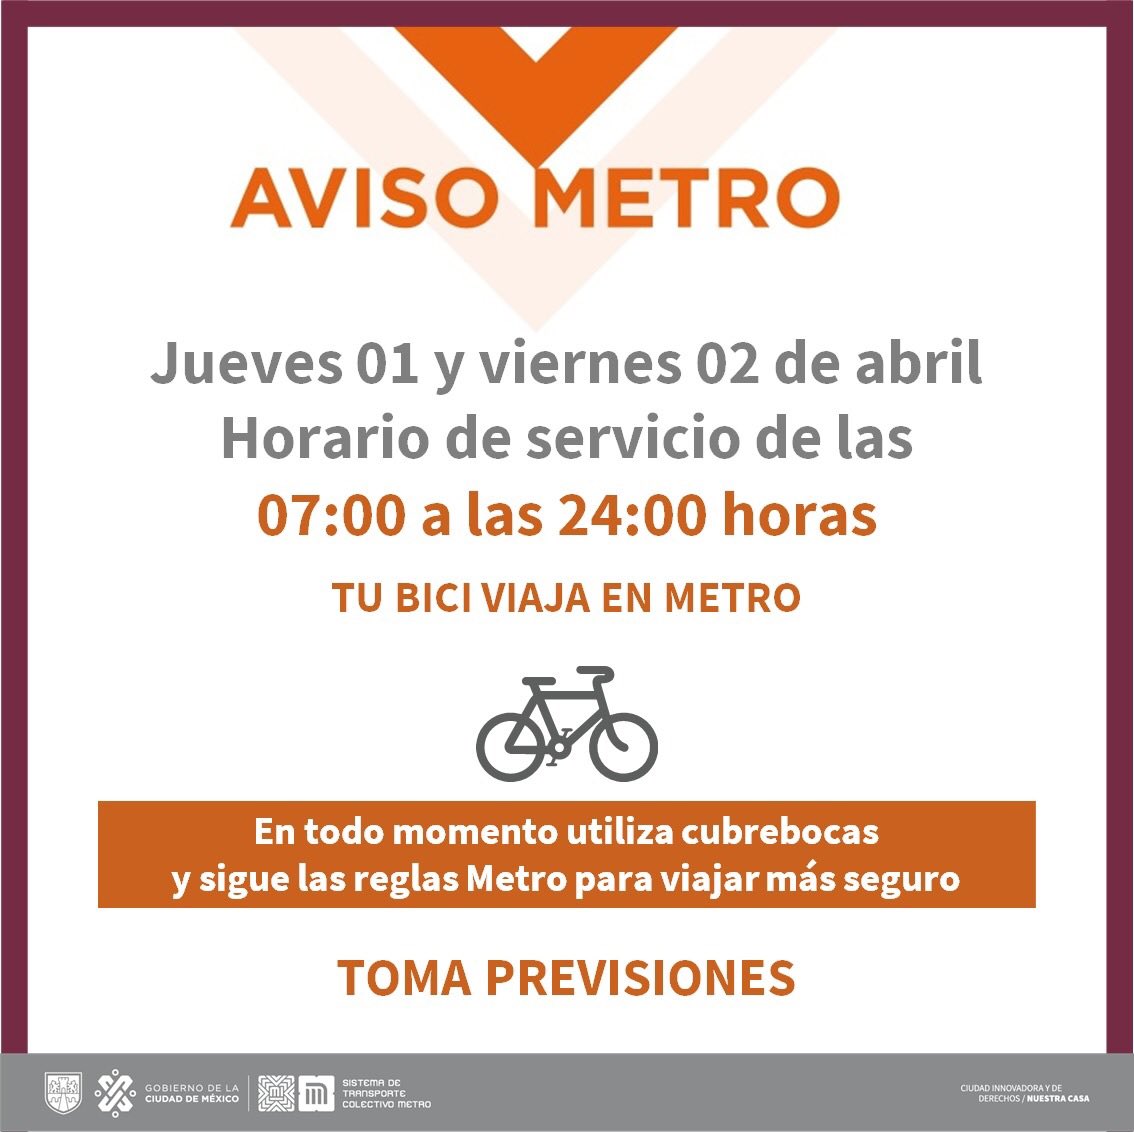 Semana Santa 2021: en qué horario dará servicio el Metro el 1 y 2 de abril  - Infobae